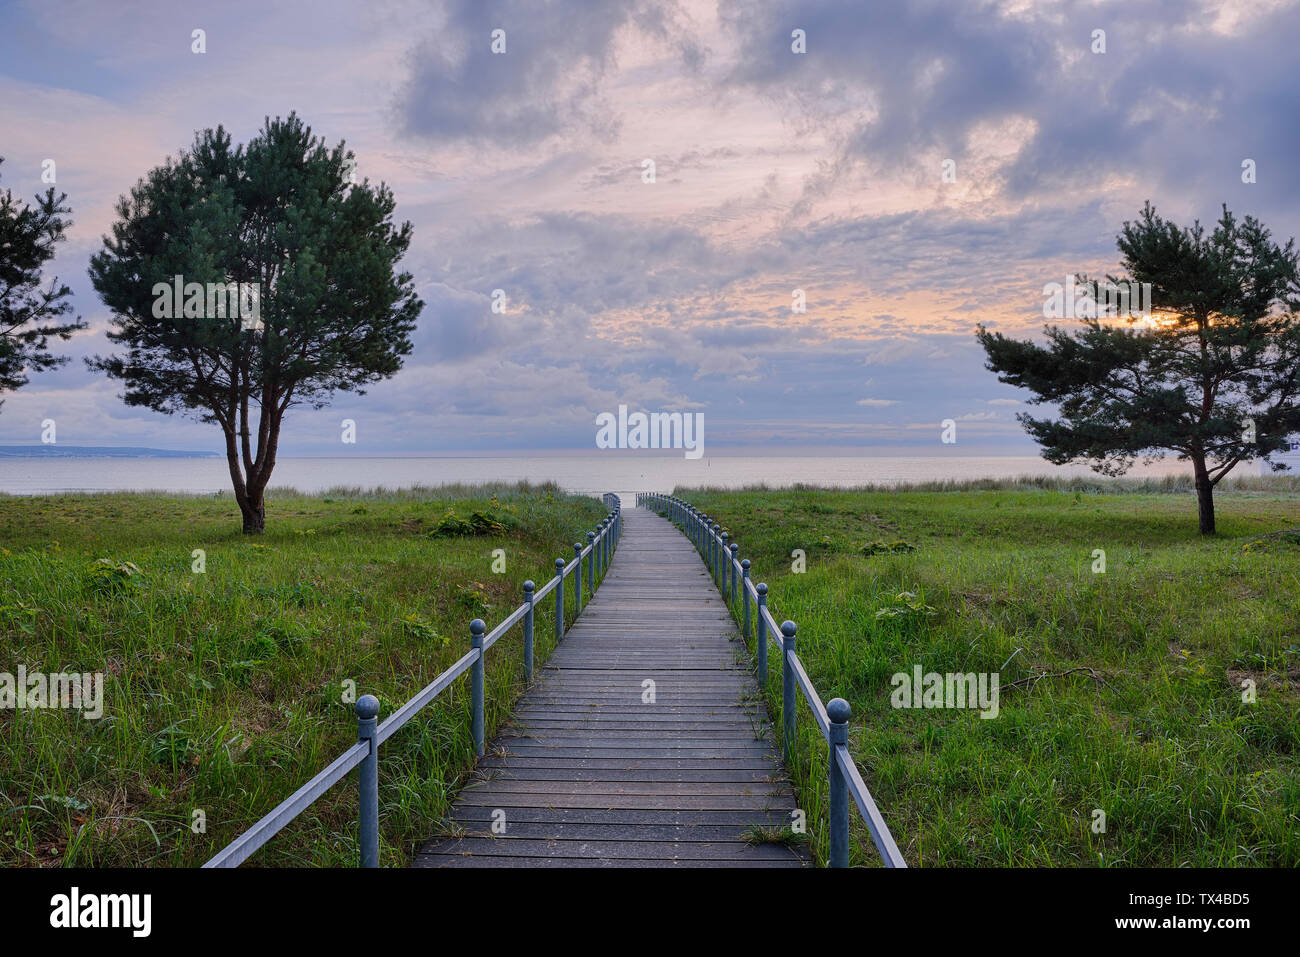 Germany, Ruegen Island, Binz, wooden boardwalk to beach in the evening Stock Photo